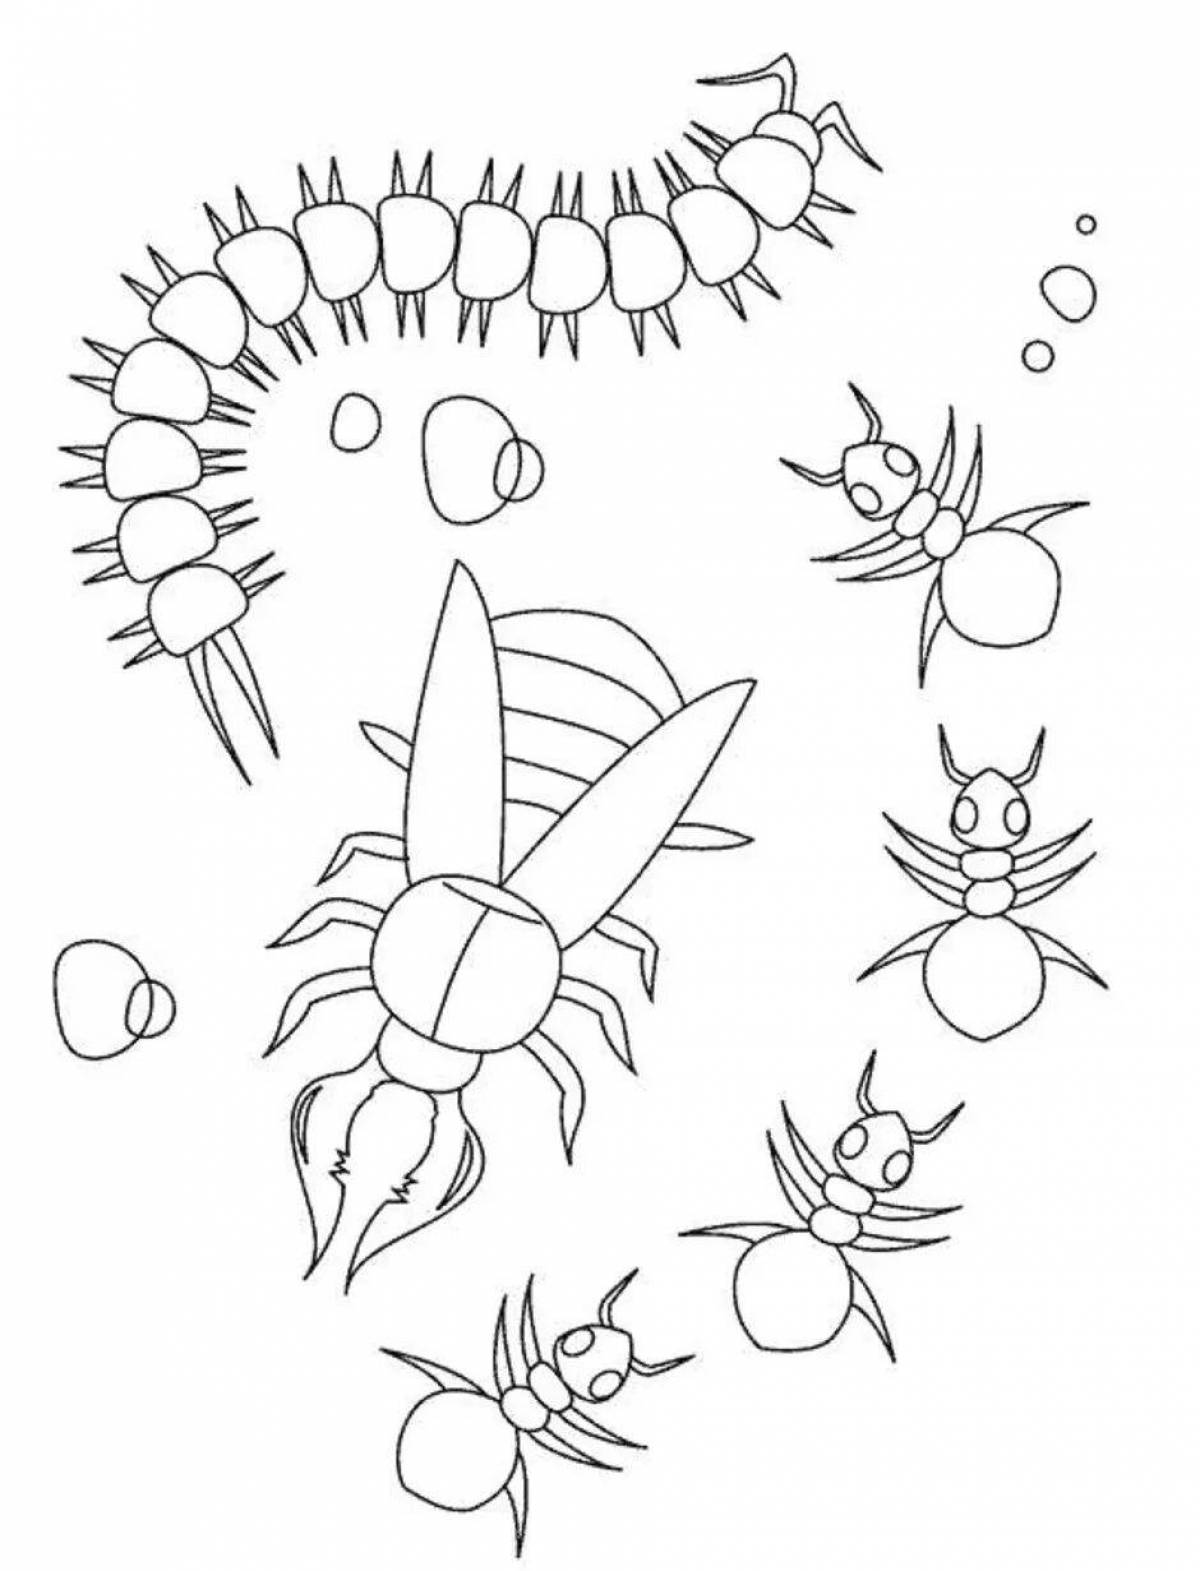 Раскраска насекомые для детей 7 лет. Раскраска насекомые для малышей. Насекомые раскраска для детей. Раскраска насекомые для дошкольников. Букашки раскраска для детей.